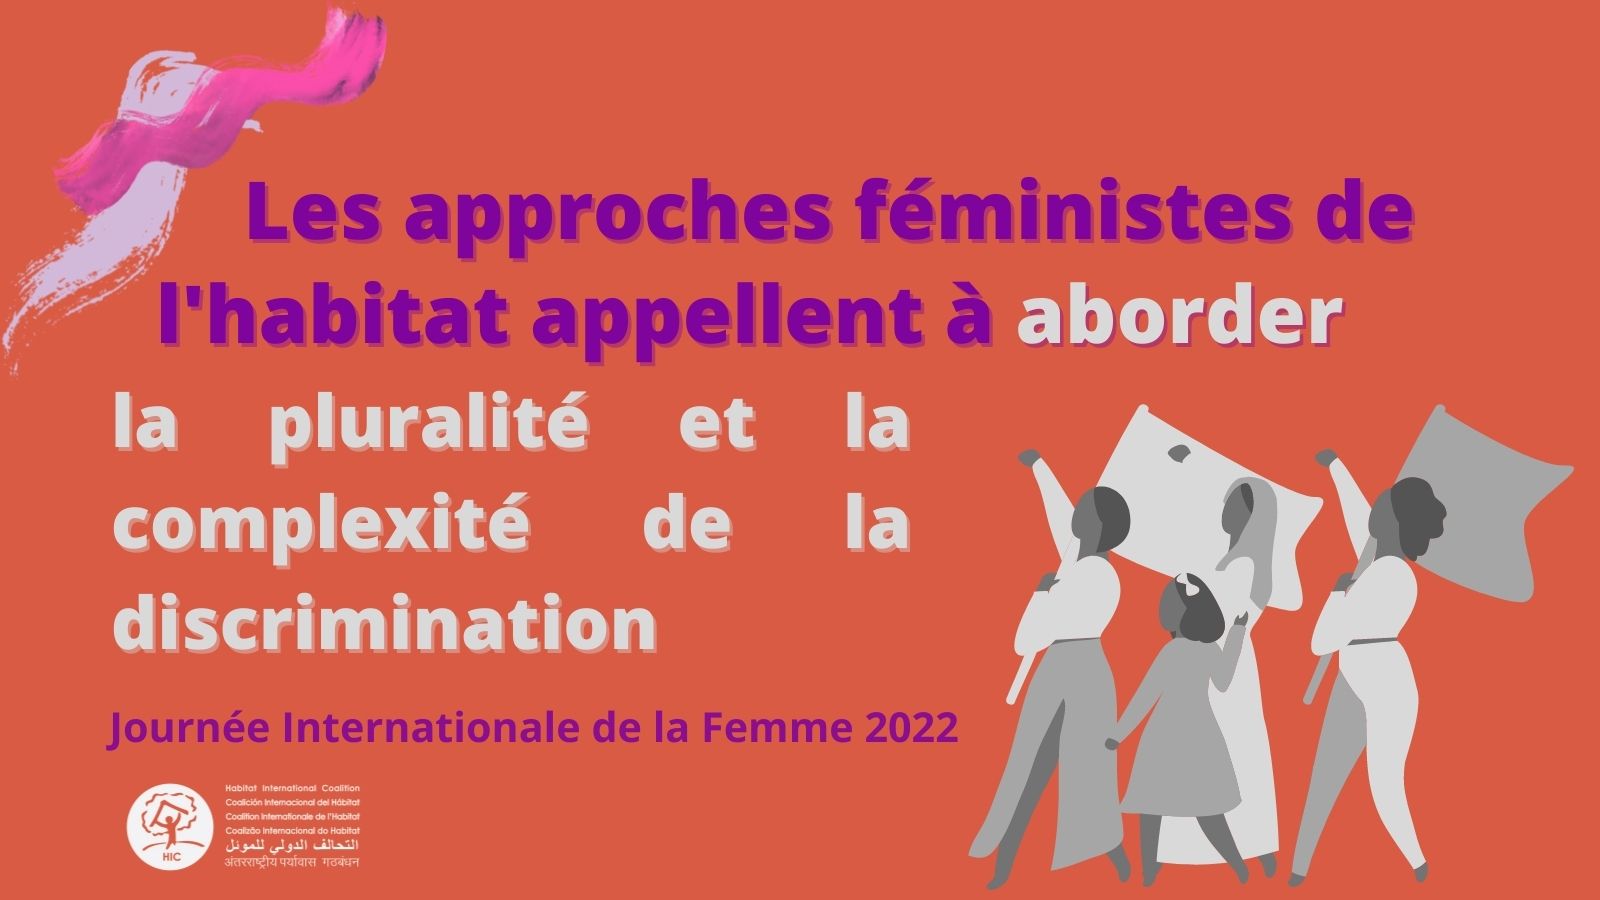 Journee Internationale de la Femme 2022: Approches Féministes de l’Habitat